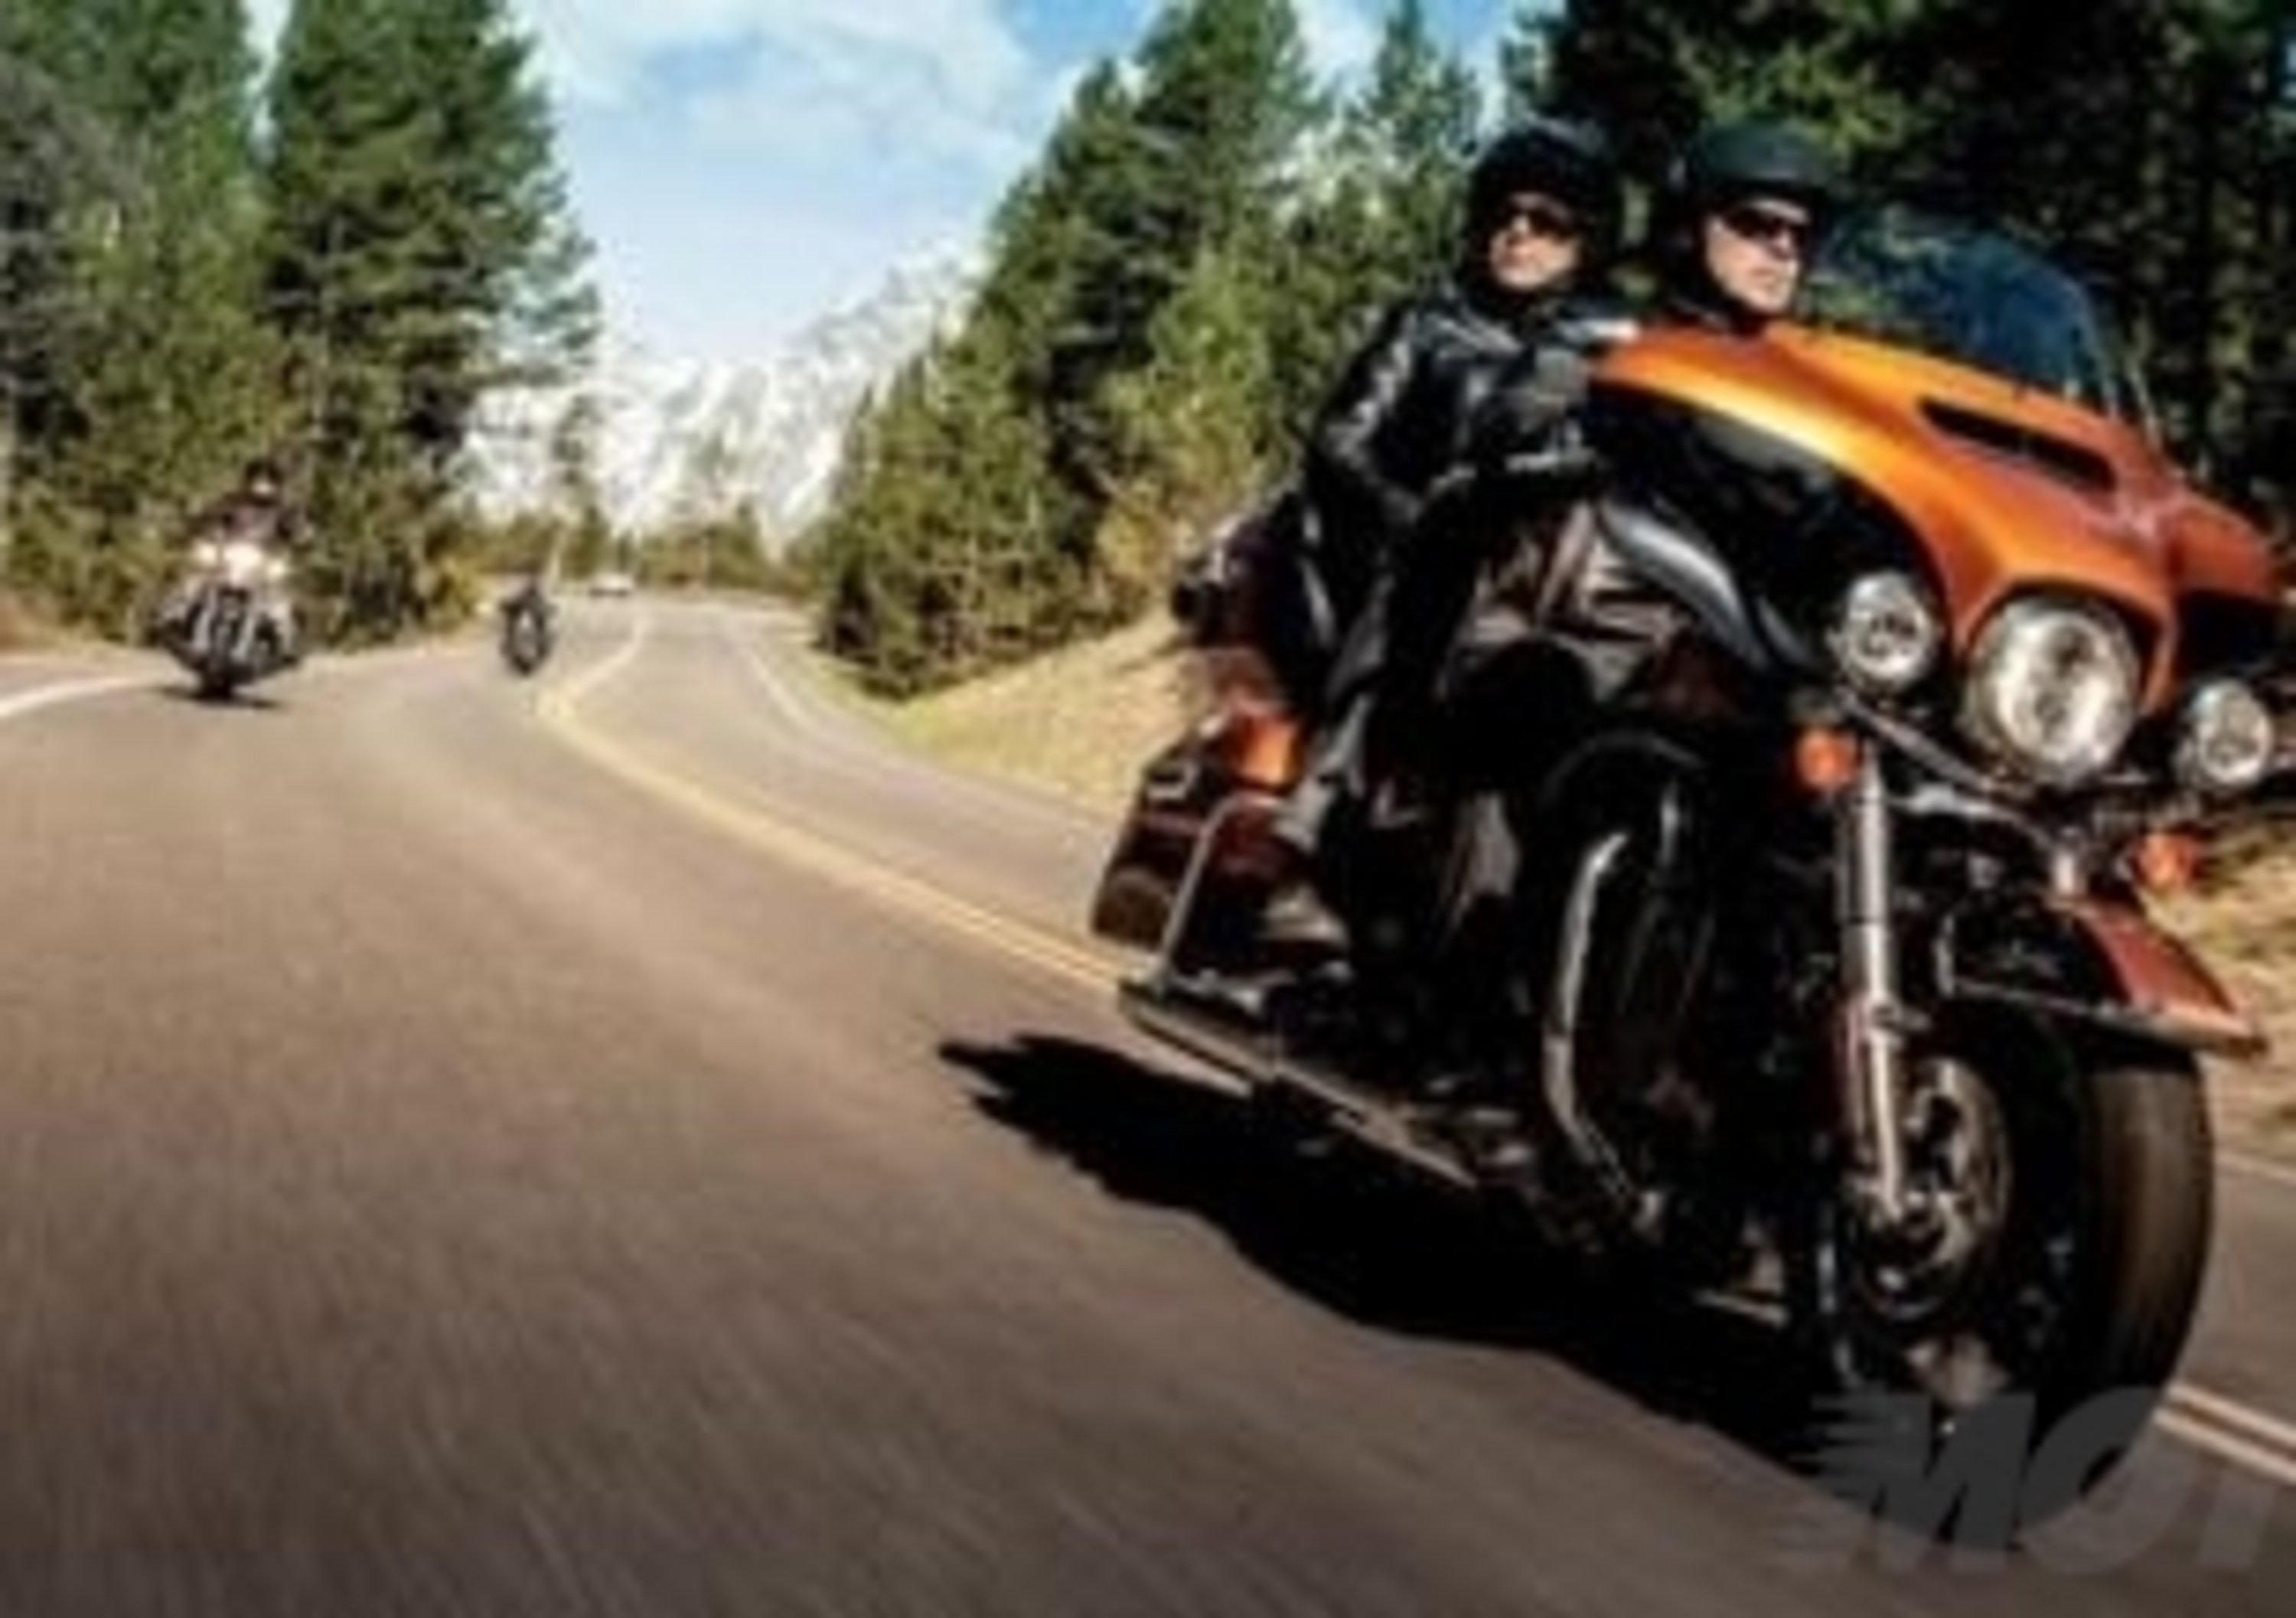 Project Rushmore: perch&eacute; la nuova gamma Touring di Harley-Davidson